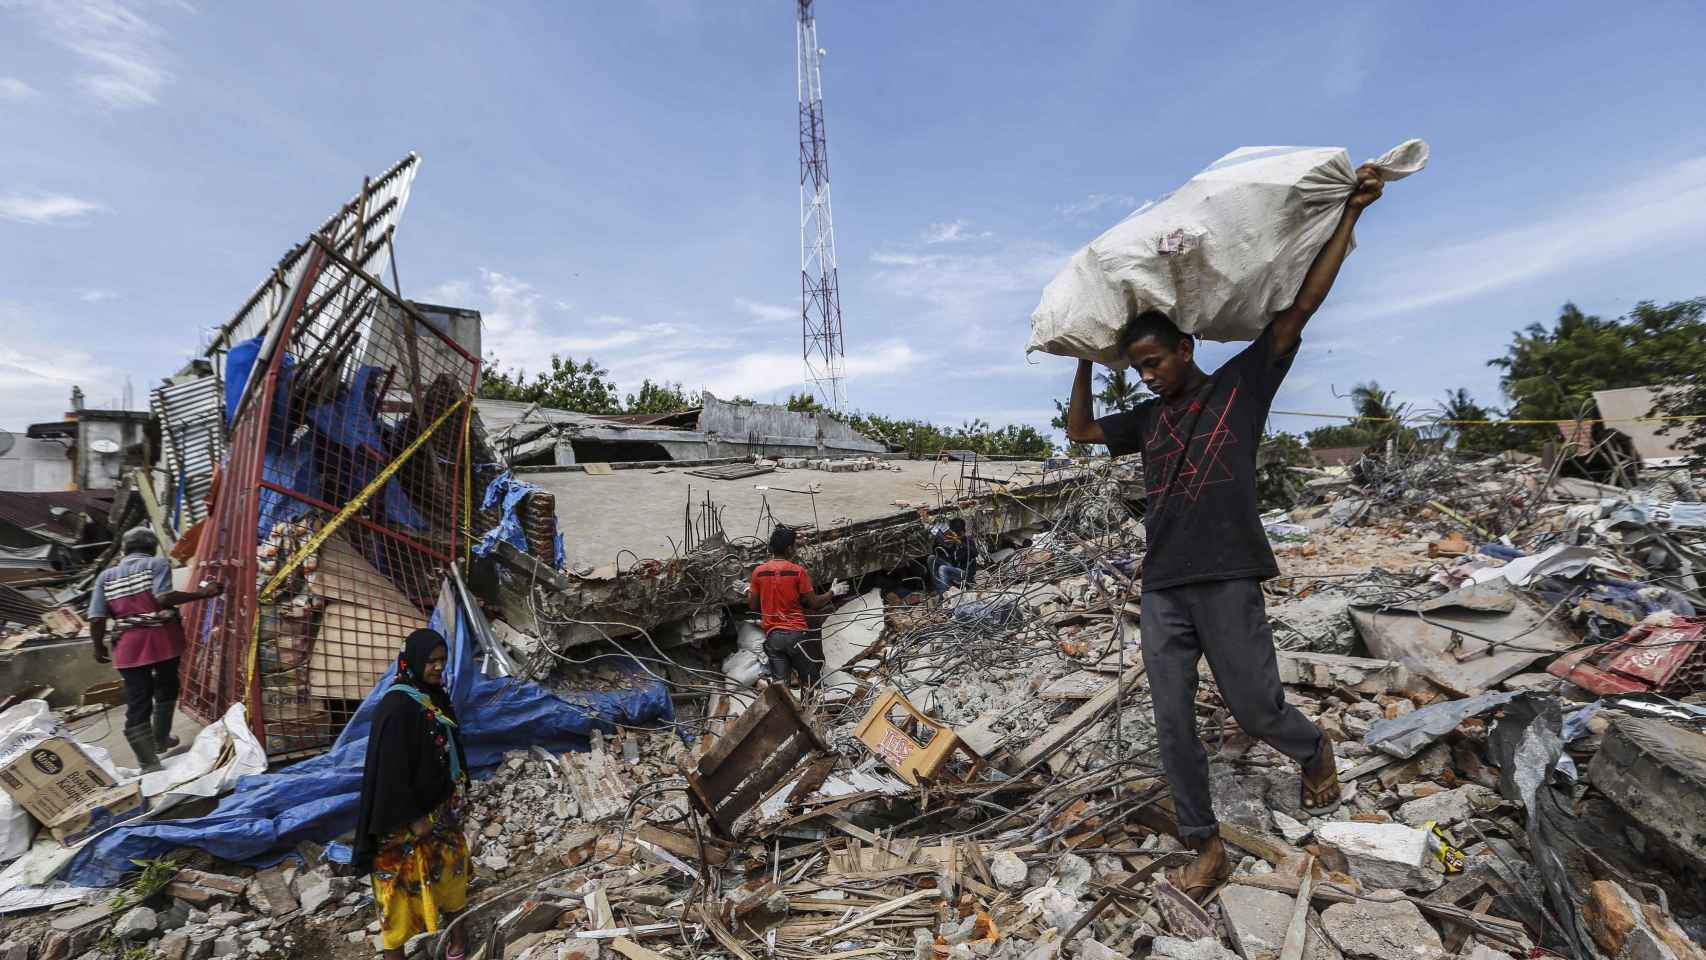 Ciudadanos indonesios buscan sus pertenencias entre los escombros tras el terremoto